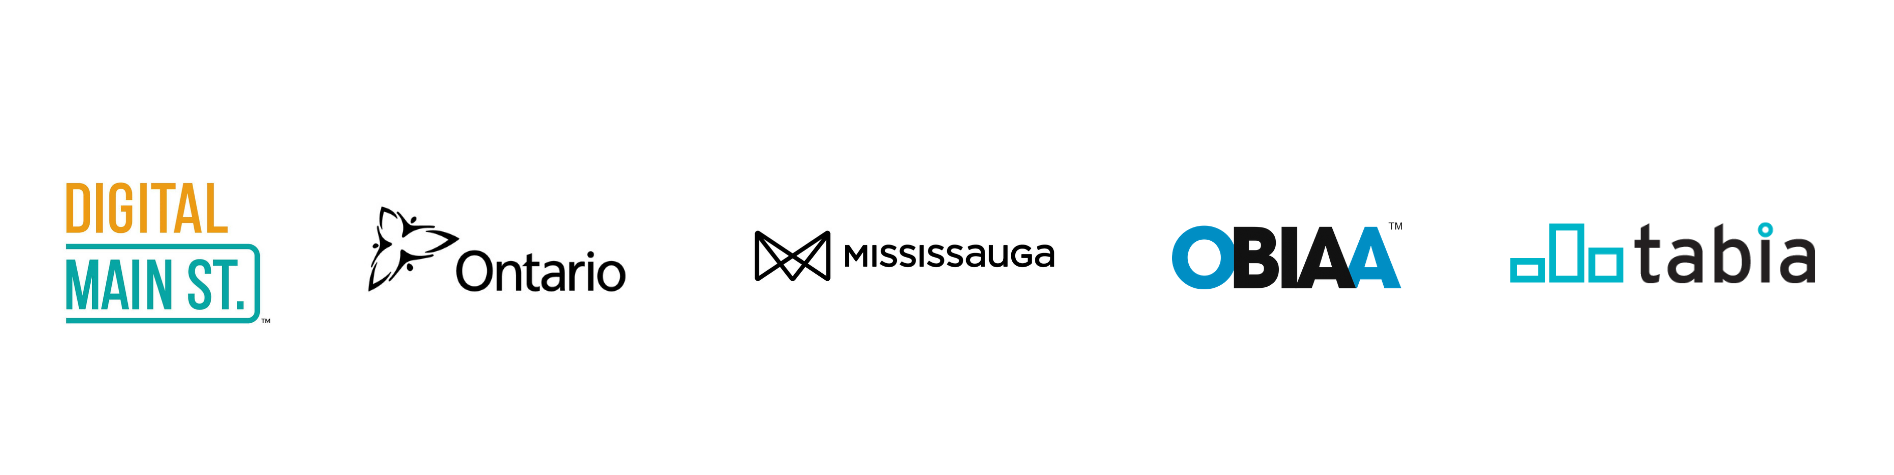 DMSt Mississauga Logos 2019